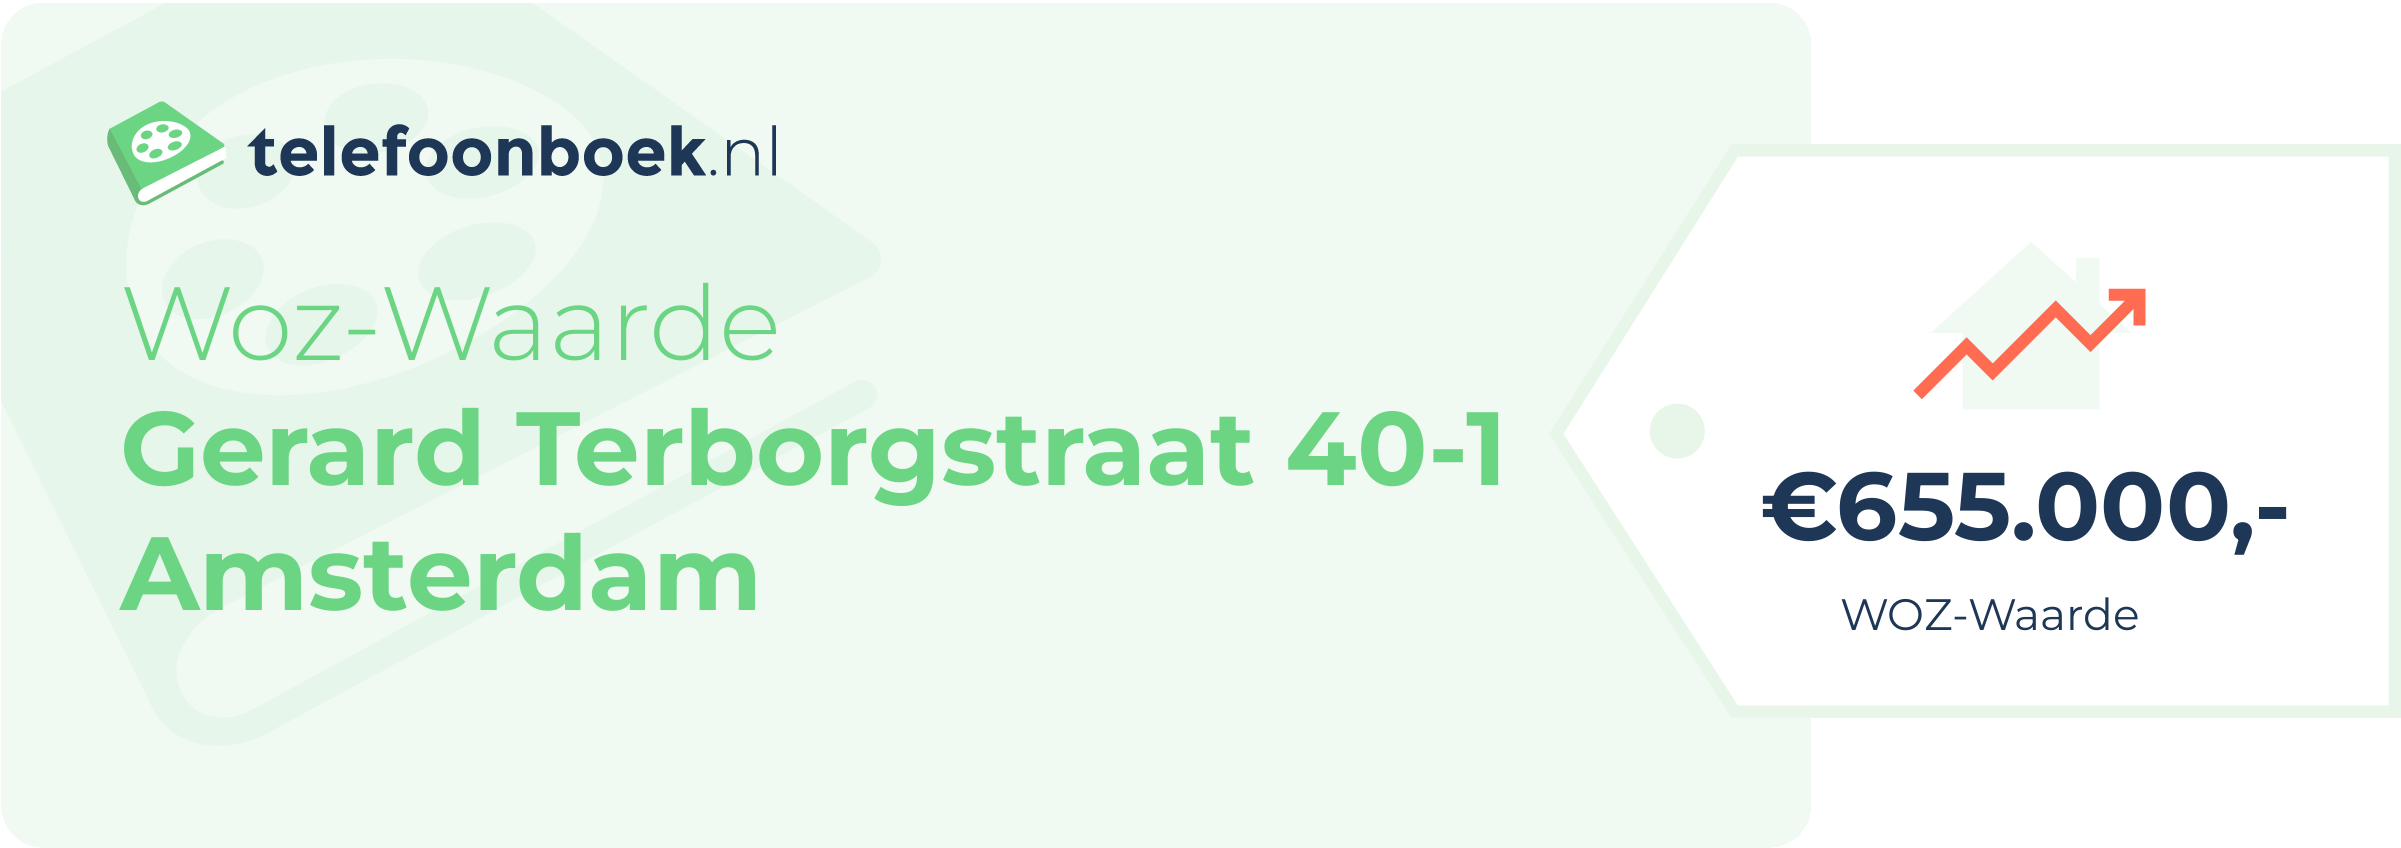 WOZ-waarde Gerard Terborgstraat 40-1 Amsterdam